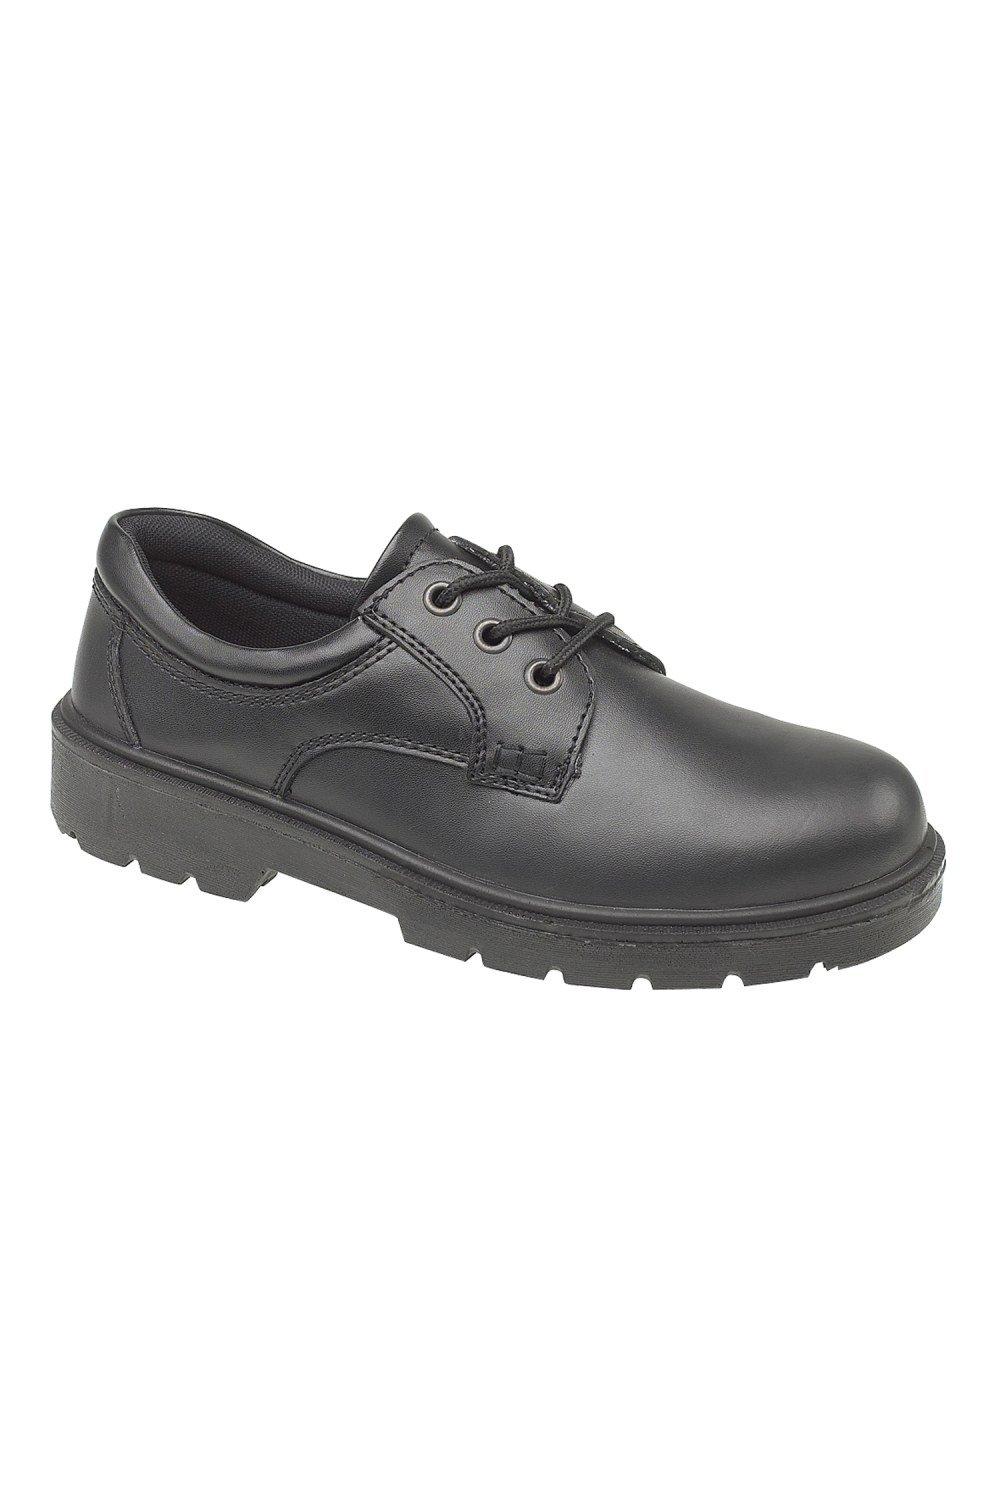 Стальные композитные туфли FS38c Amblers, черный цена и фото